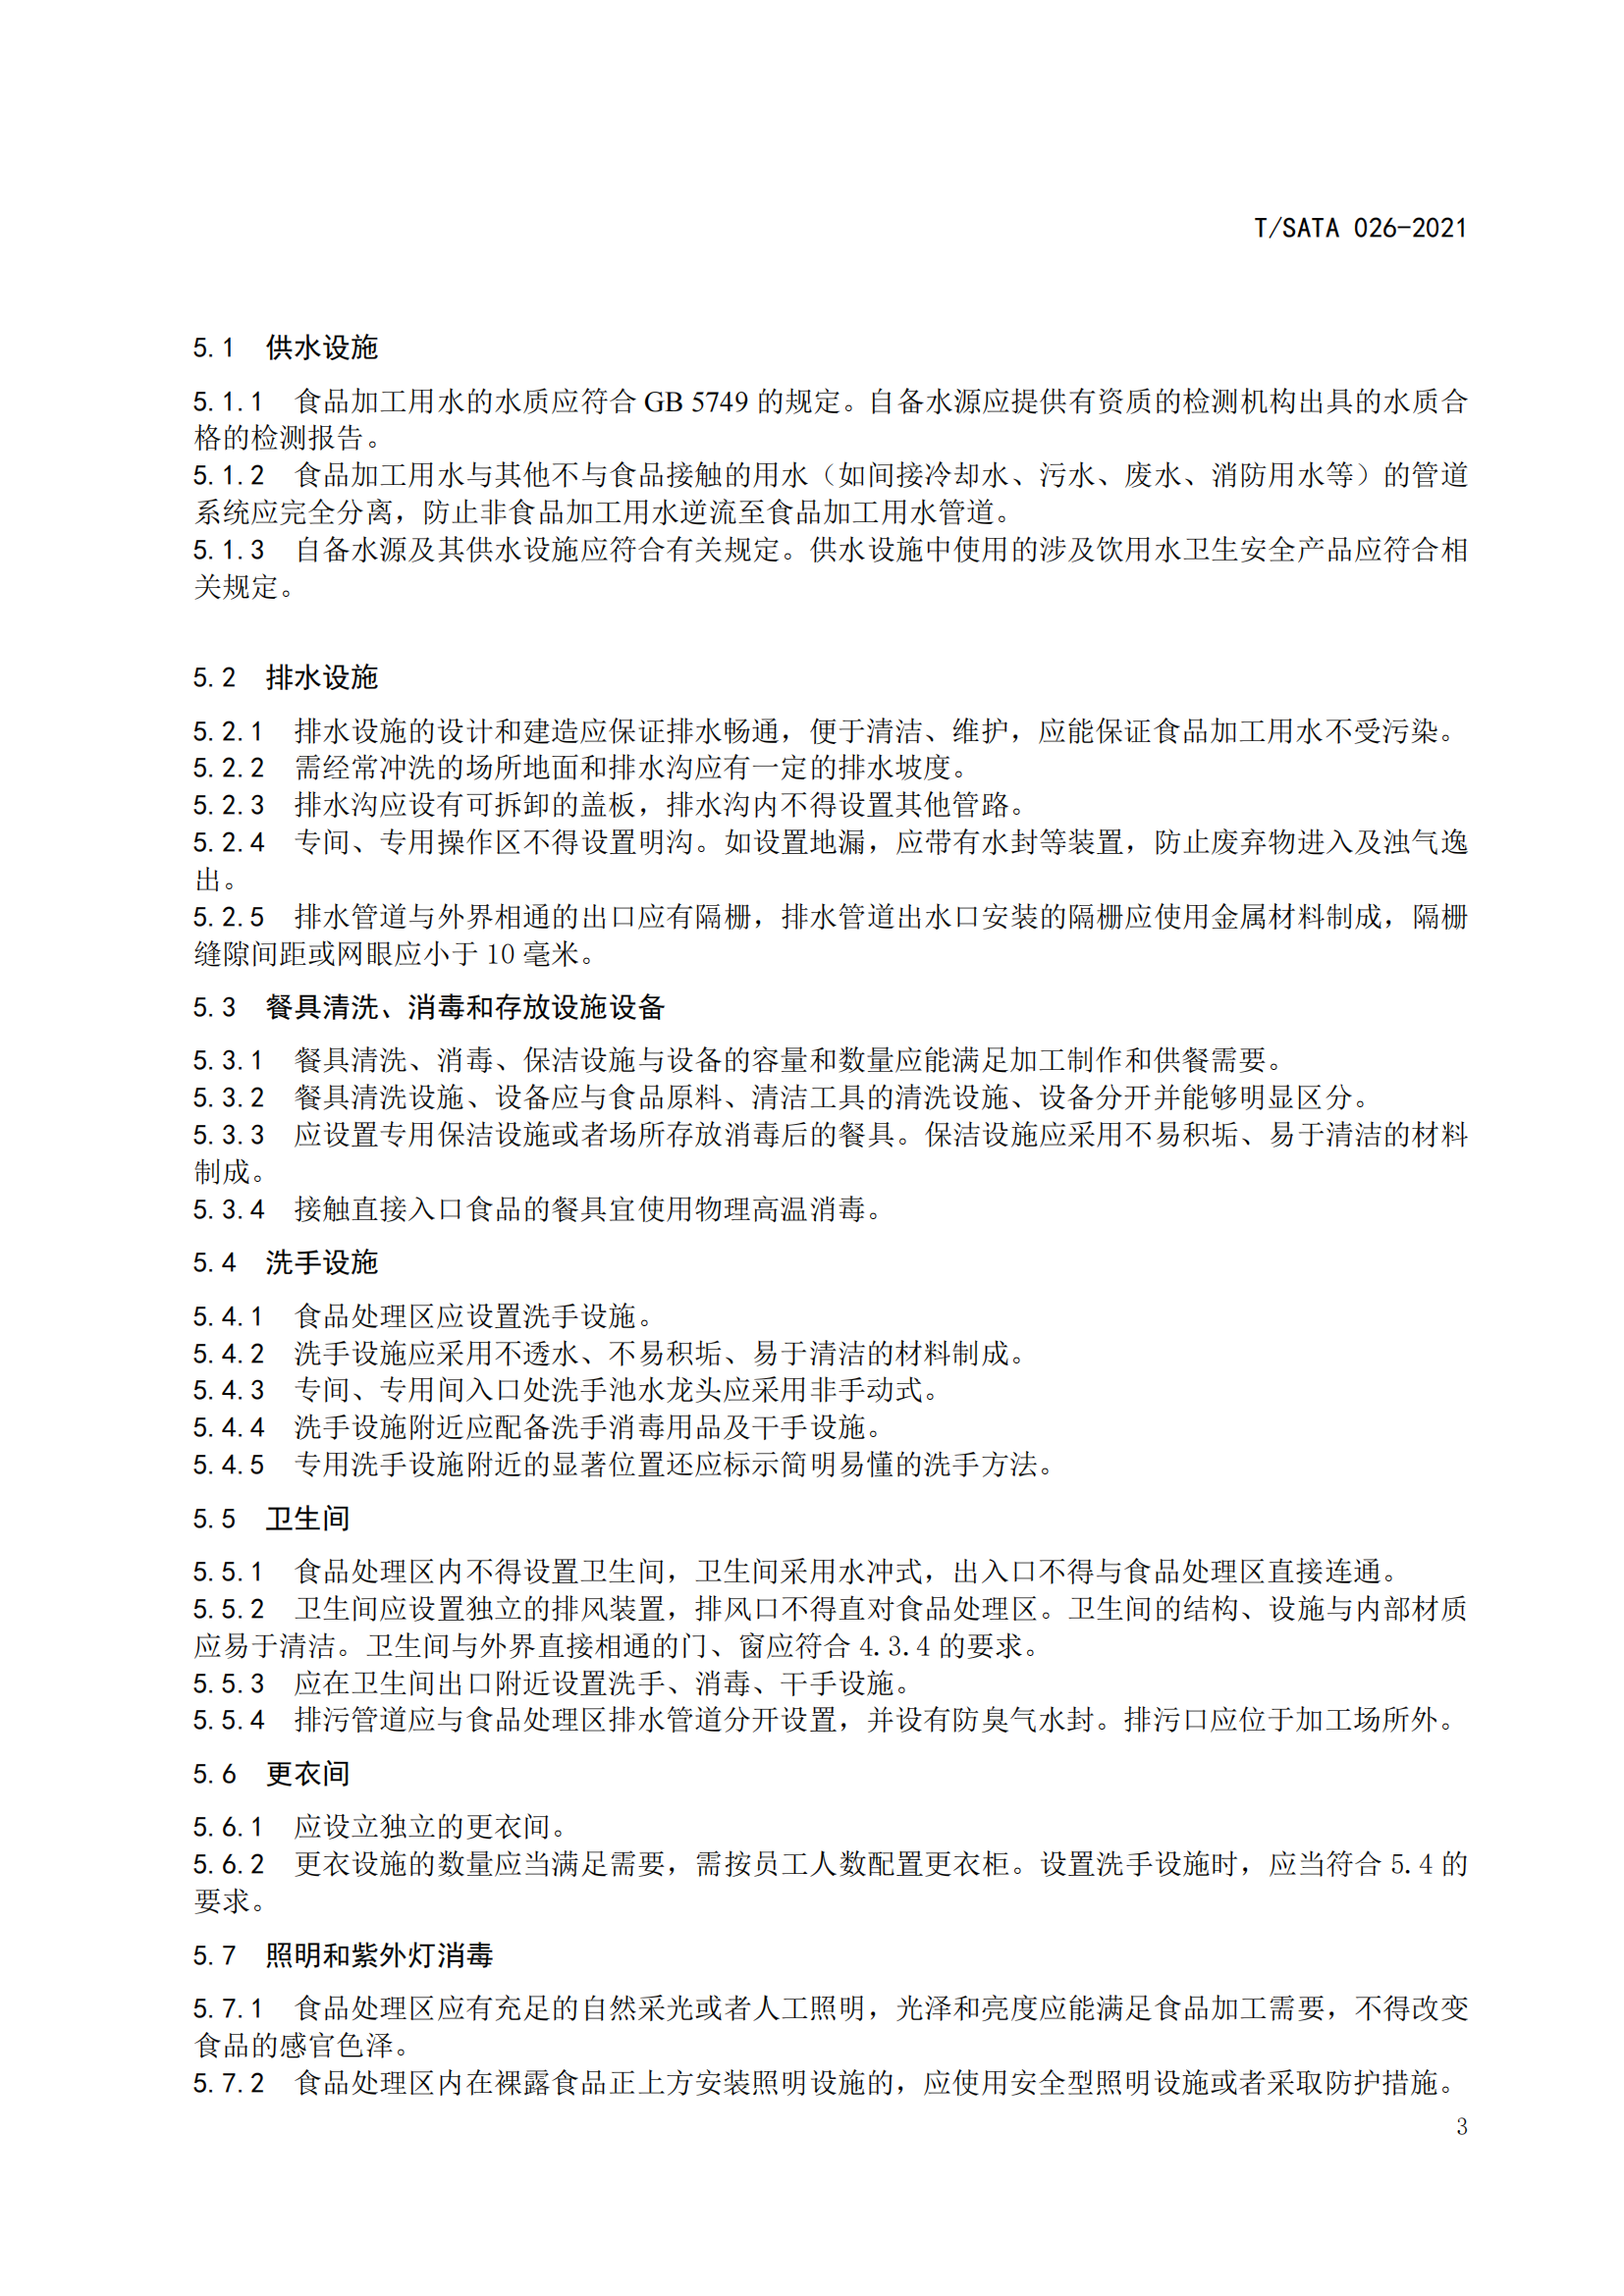 《深圳市校外集中配送学生餐操作规范》团体标准（发布版）2021.11.18终_05.png